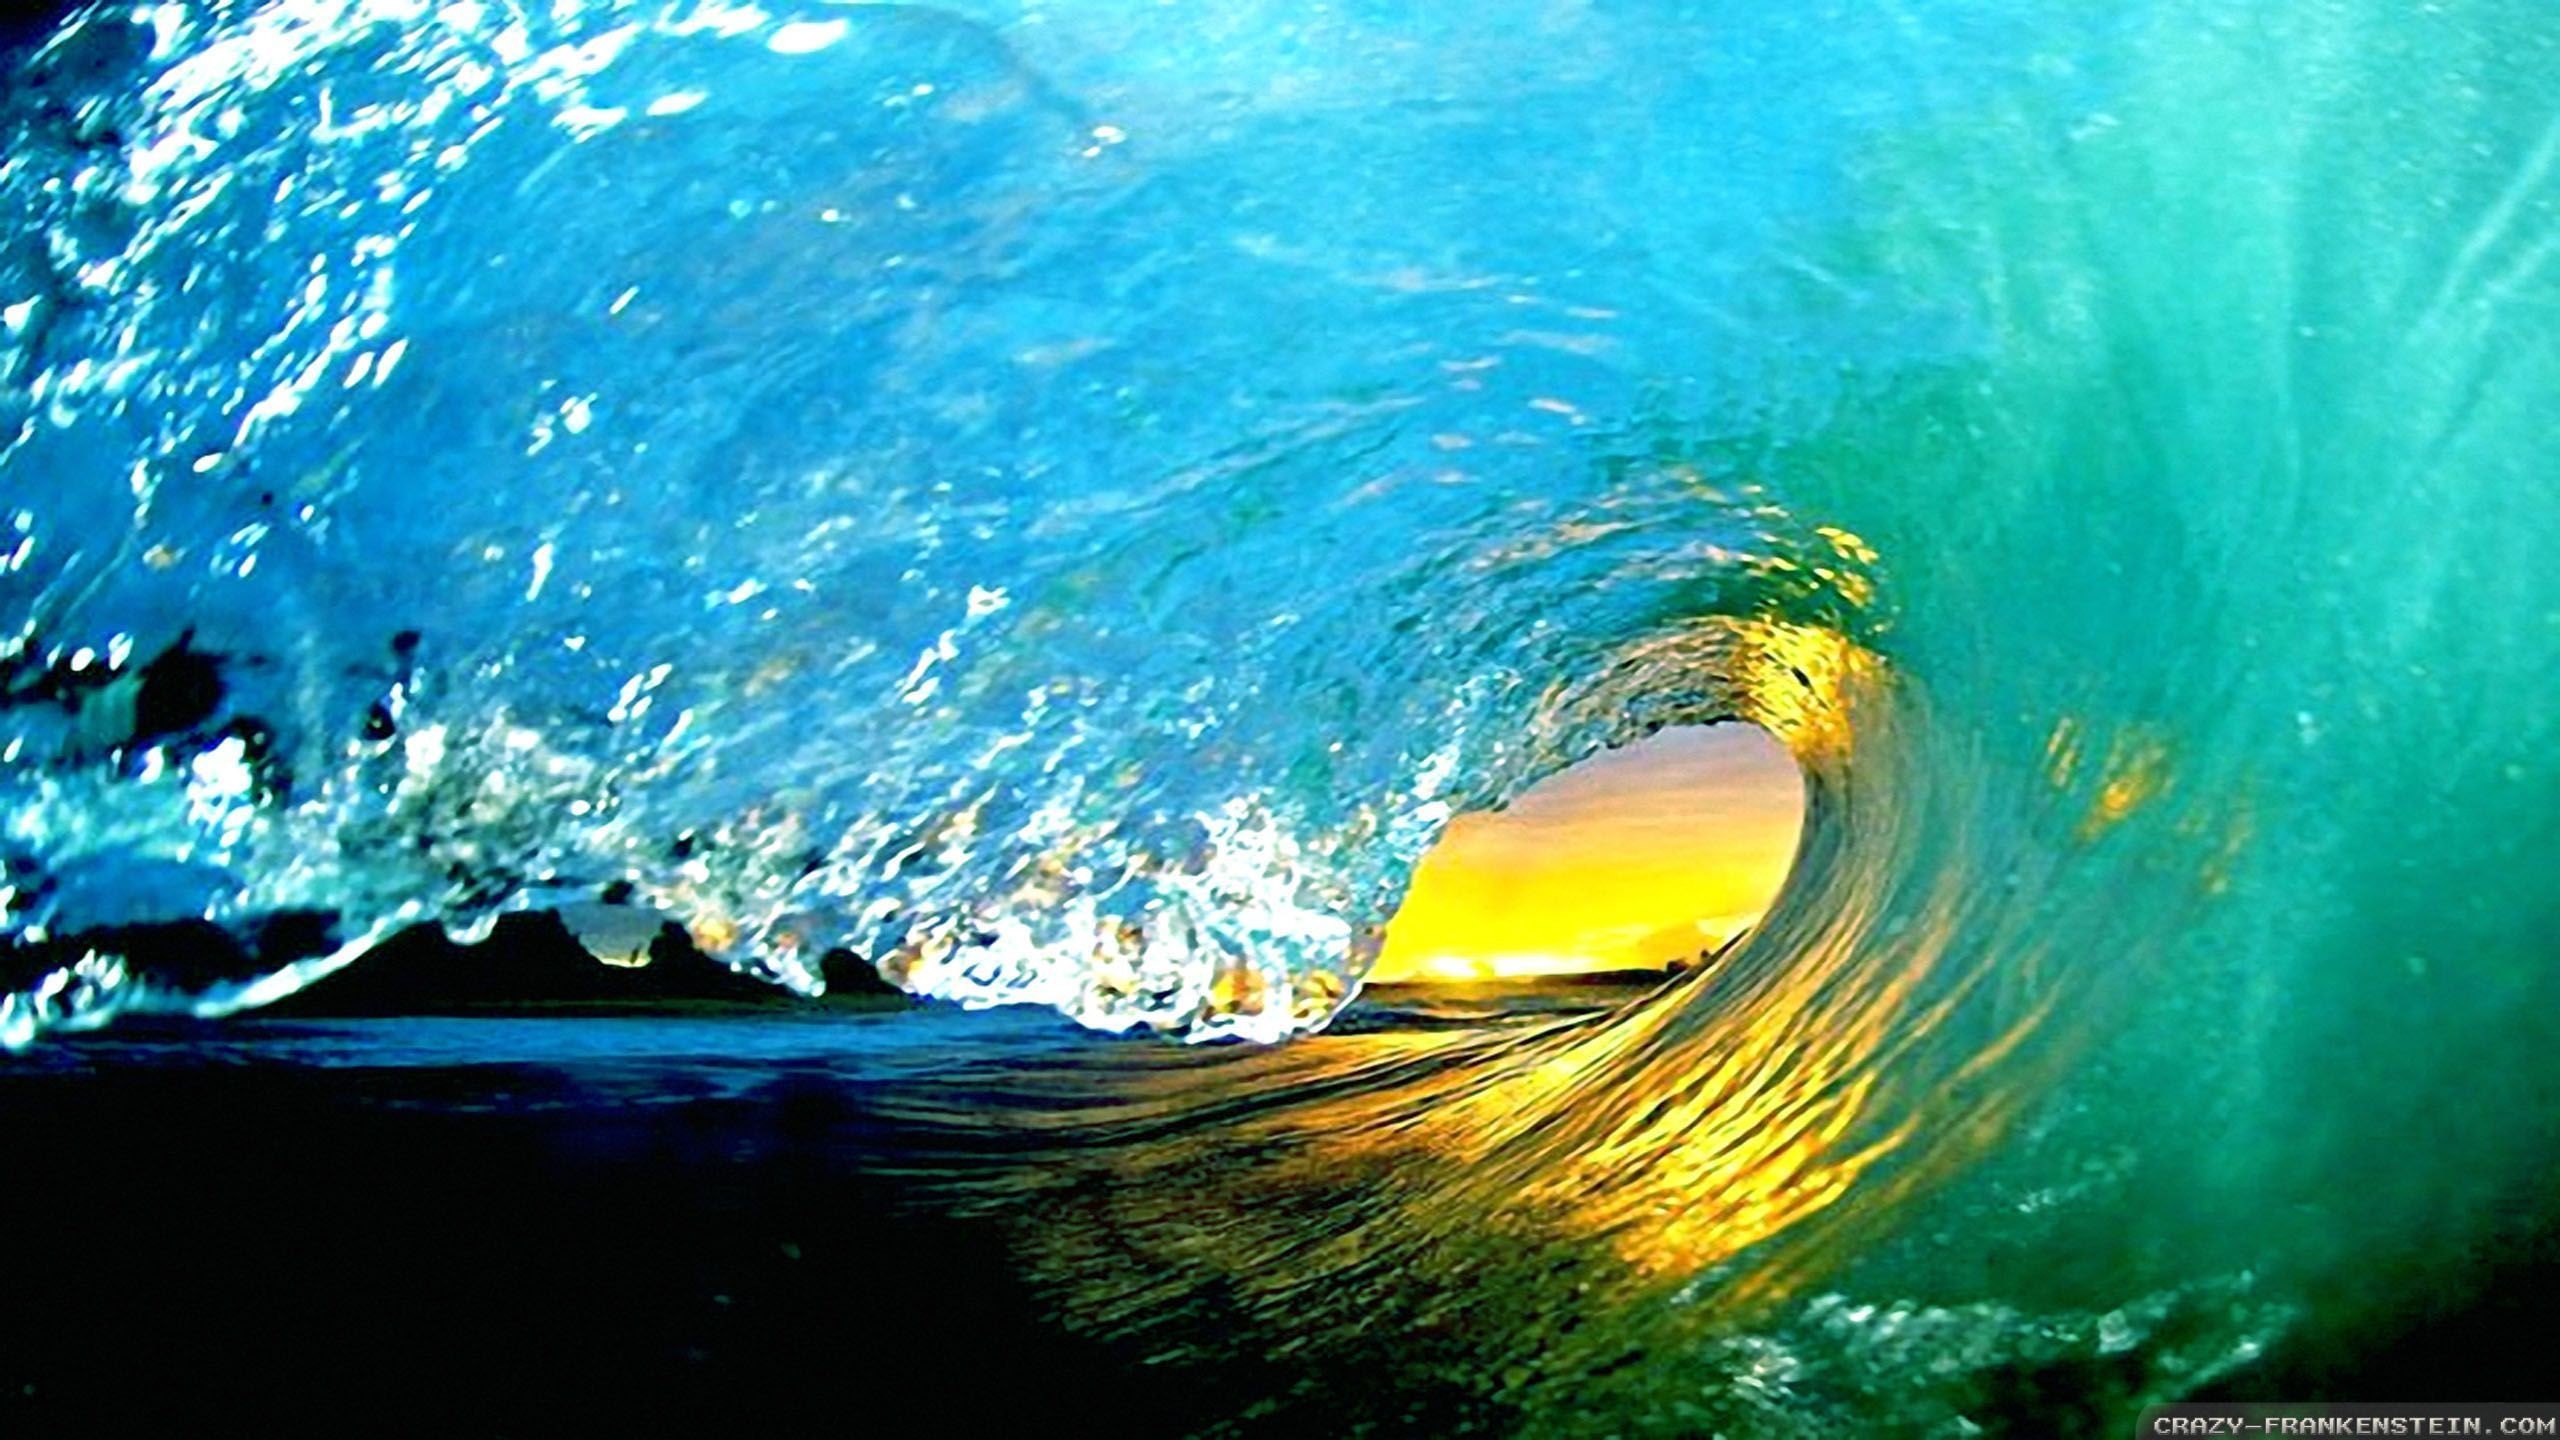 Обои на стол волна. Кларк Литтл фото. Красота моря. Красивые волны. Красота воды.